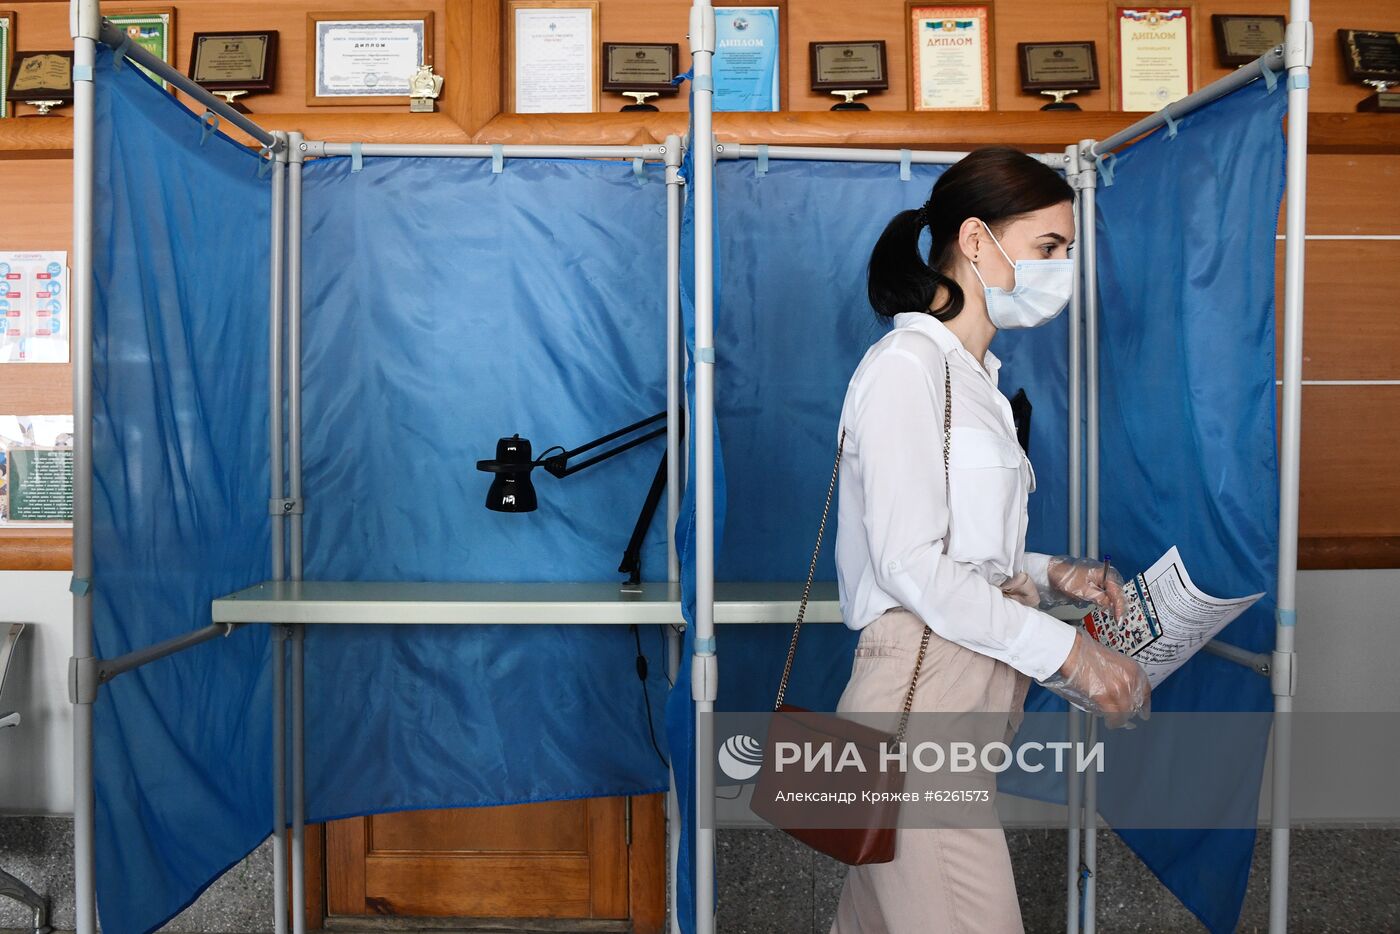  Участок для голосования по поправкам в Конституцию в Новосибирске